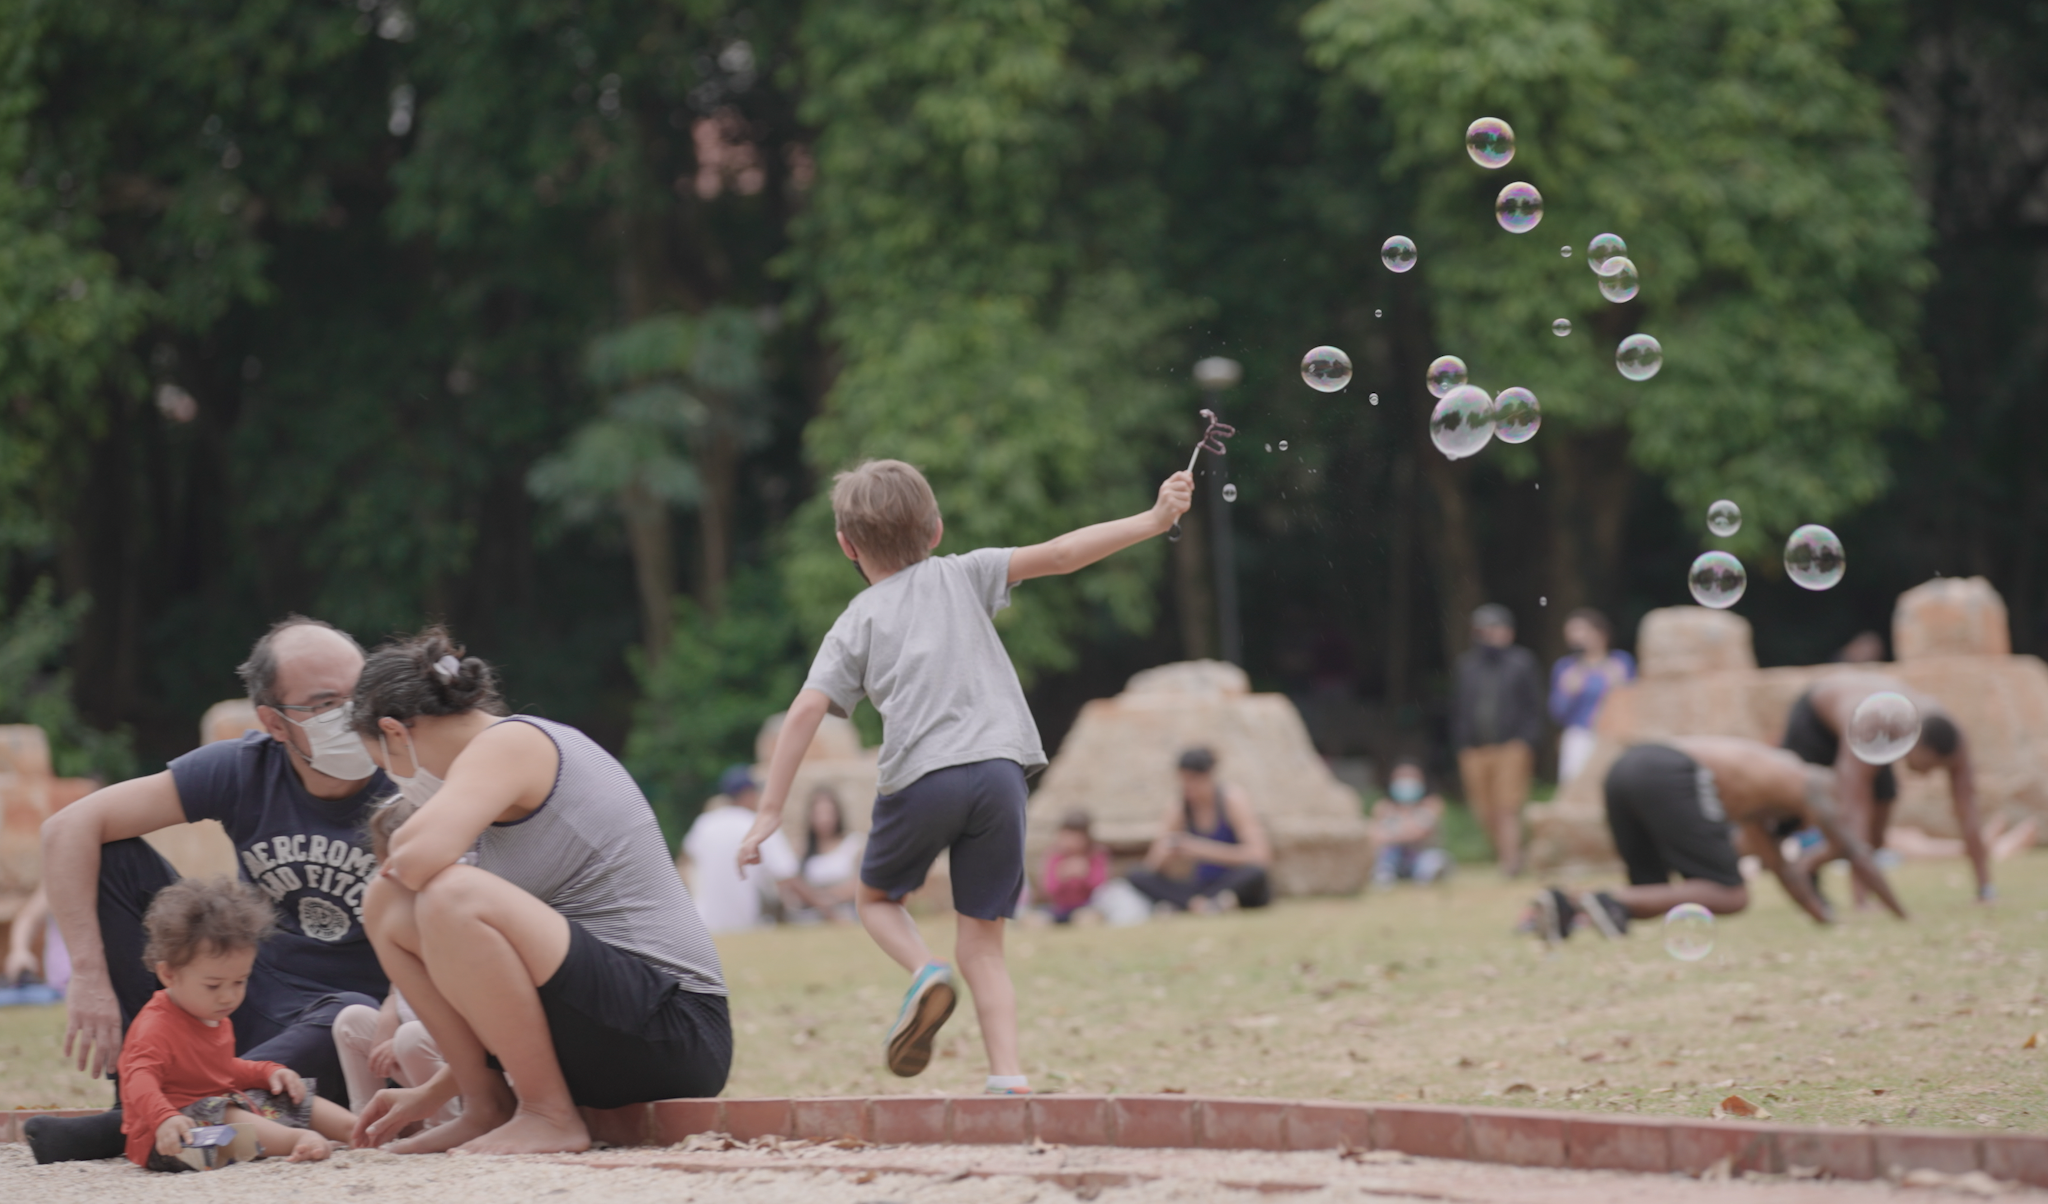 Menino corre em um parque e, em torno dele, há muitas bolhas de sabão.